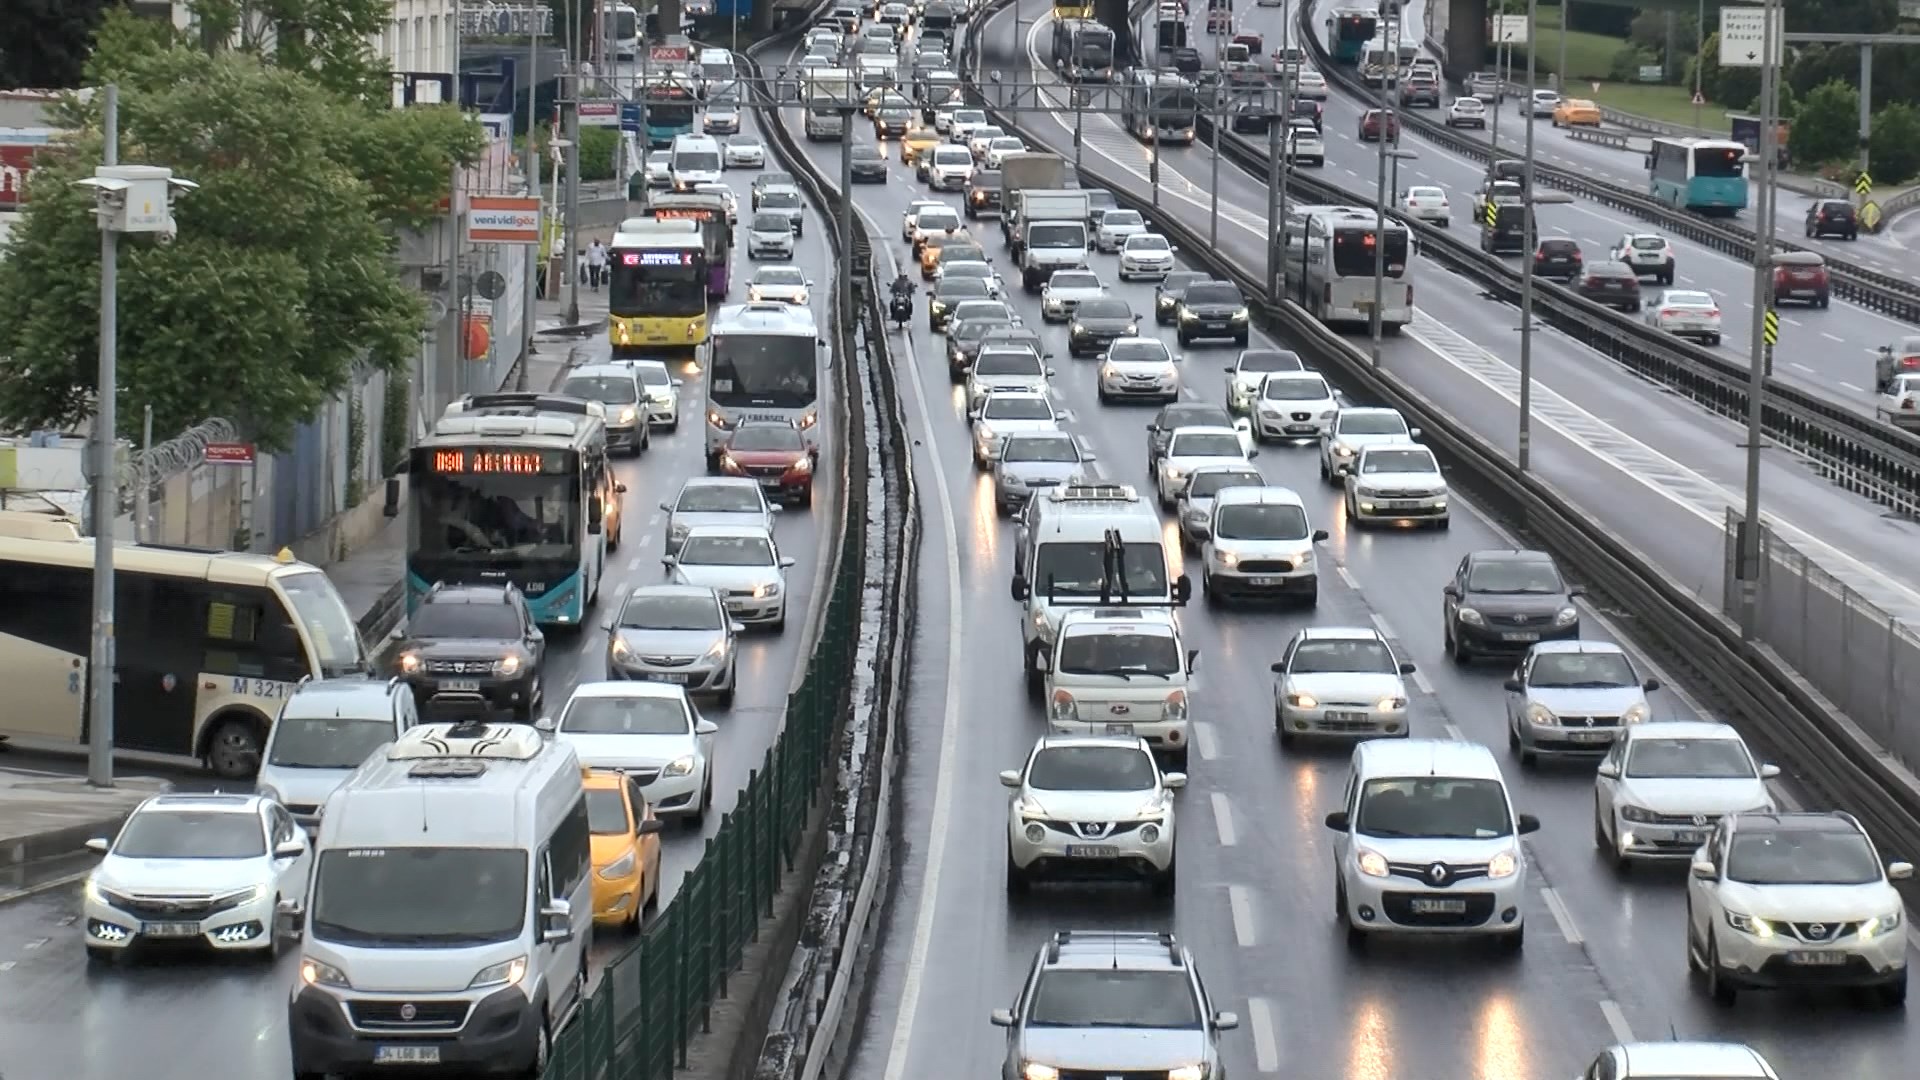 İstanbul’da trafik bazı noktalarda durma noktasına geldi